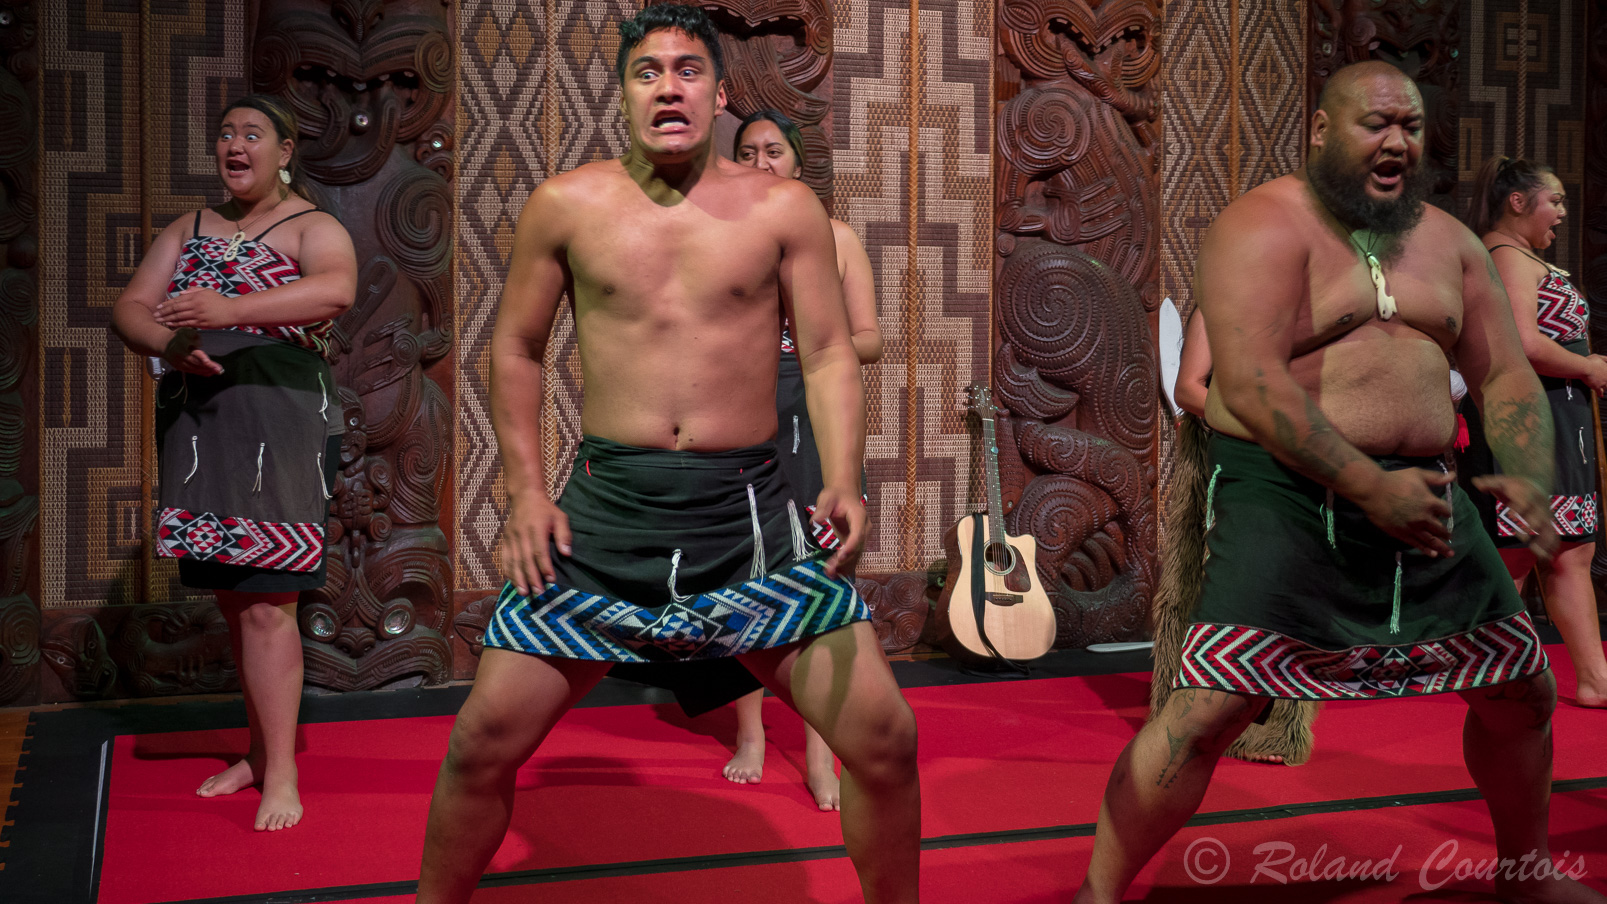 La troupe locale, Te Pitowhenua, présente la culture indigène néozélandaise dans le Te Whare Runanga. Il s’agit d’un spectacle de waita (chanté), au poi, à des jeux de colle, au maniement des armes maori, ainsi qu'au célèbre haka.